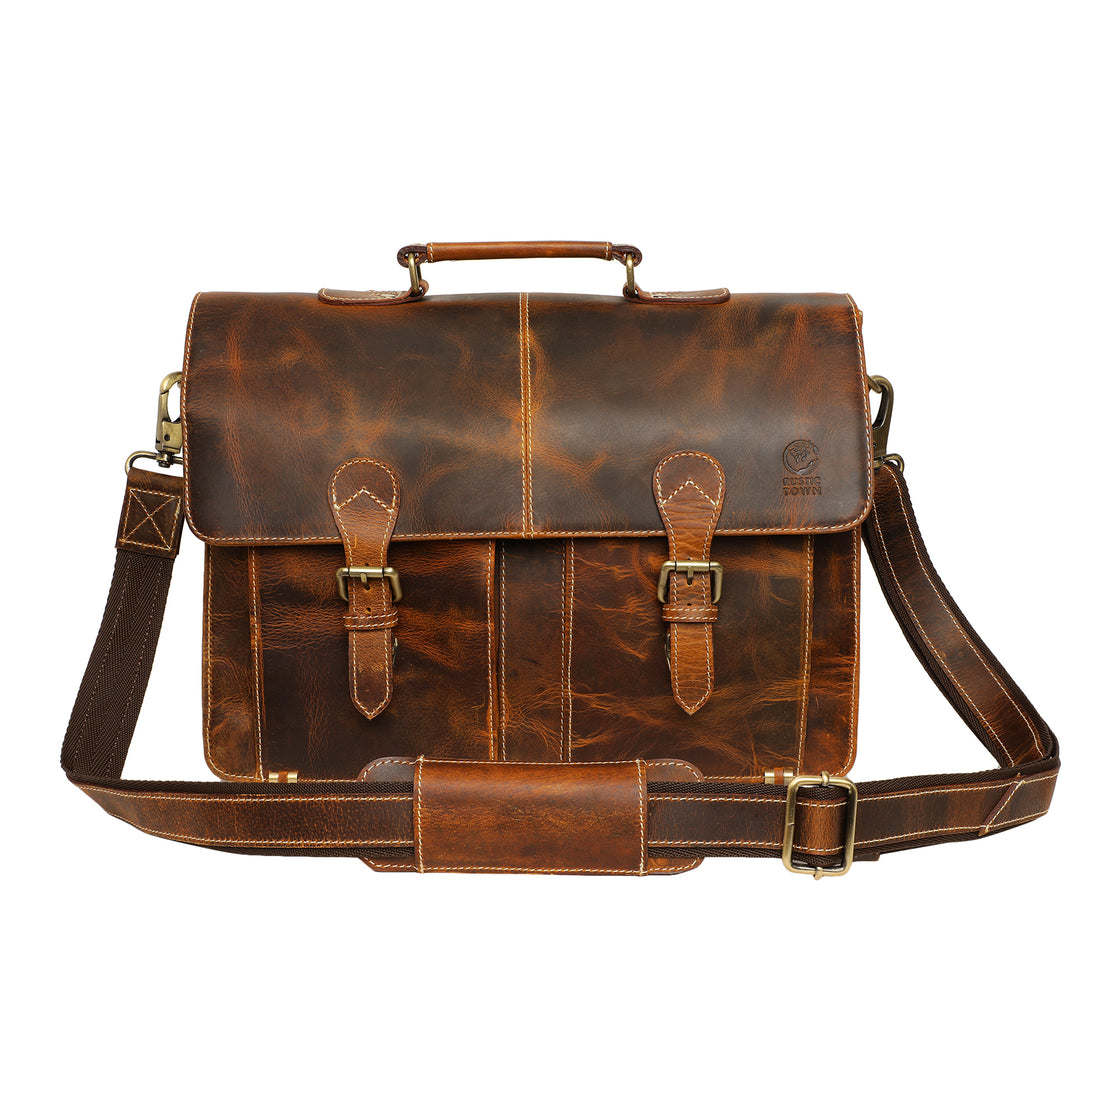 Wayne Premium 16" Leather Satchel Office Laptop Bag (Antique Brown)